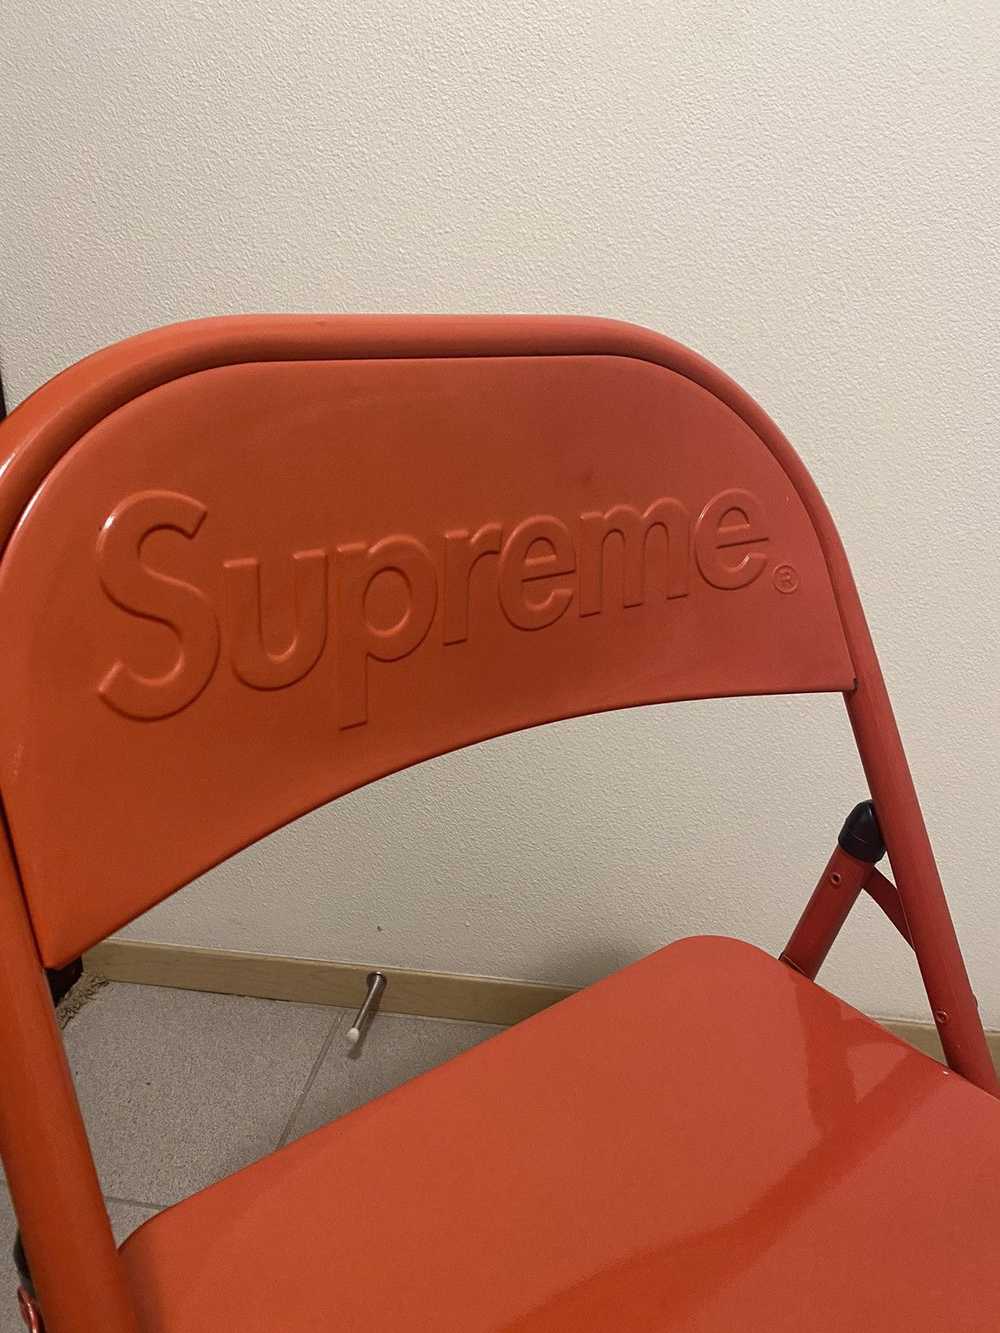 Supreme Supreme folding metal chair - image 7